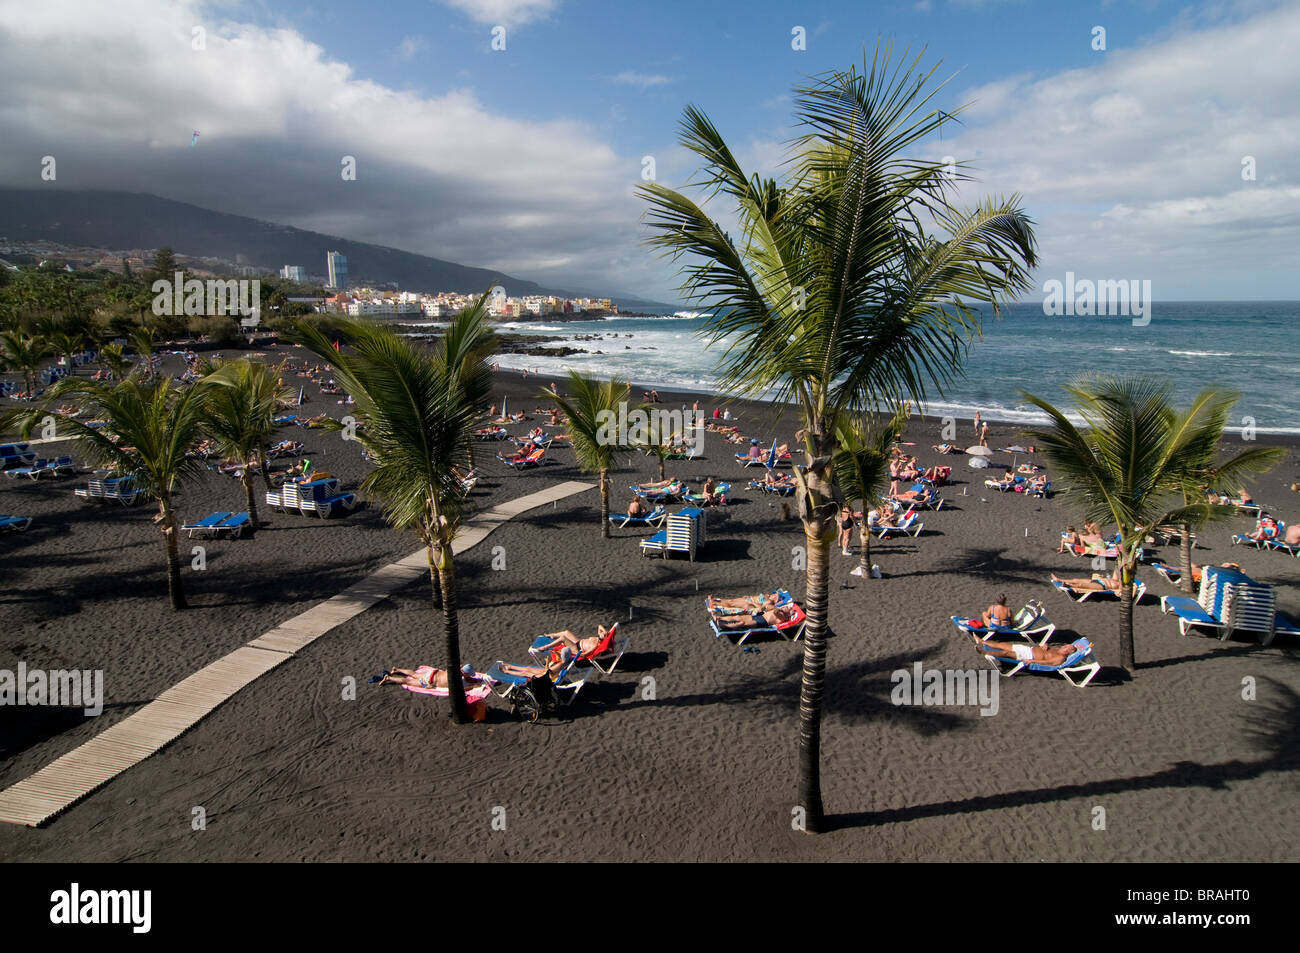 La plage volcanique de Puerto De La Cruz, Tenerife, Canaries, Espagne, Europe, Atlantique Banque D'Images